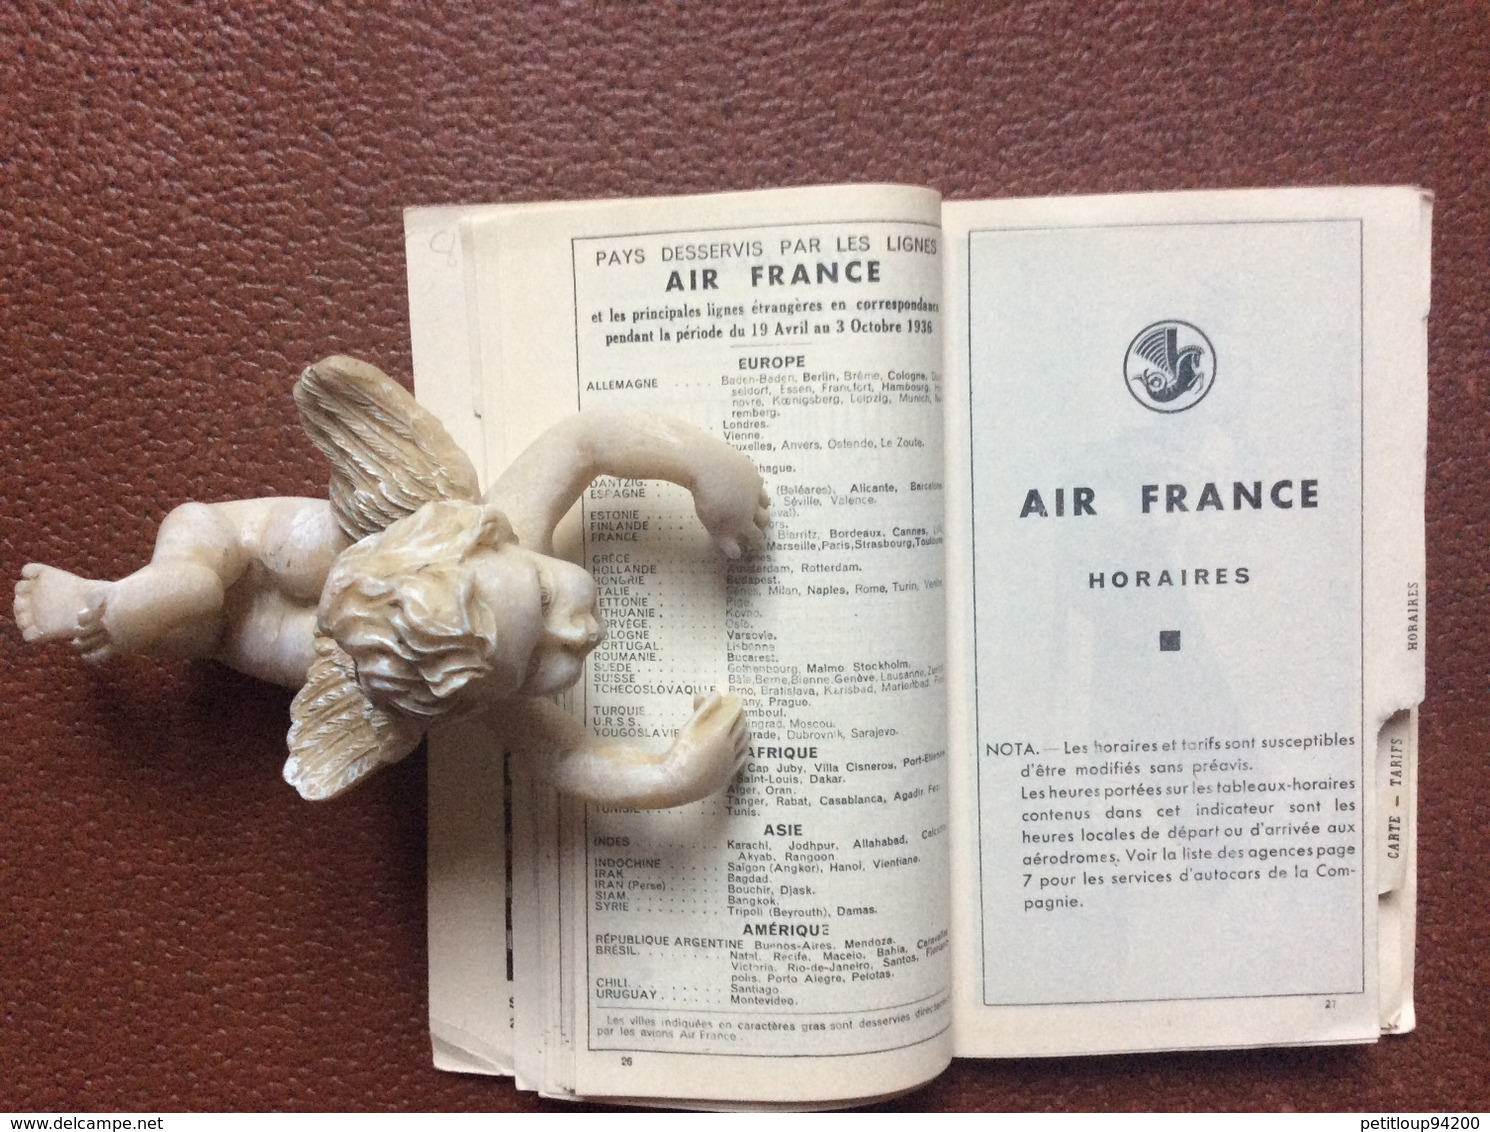 INDICATEUR GENERAL AIR FRANCE  France et Colonies  PRINTEMPS-ETE 1936  19 Avril-3 Octobre